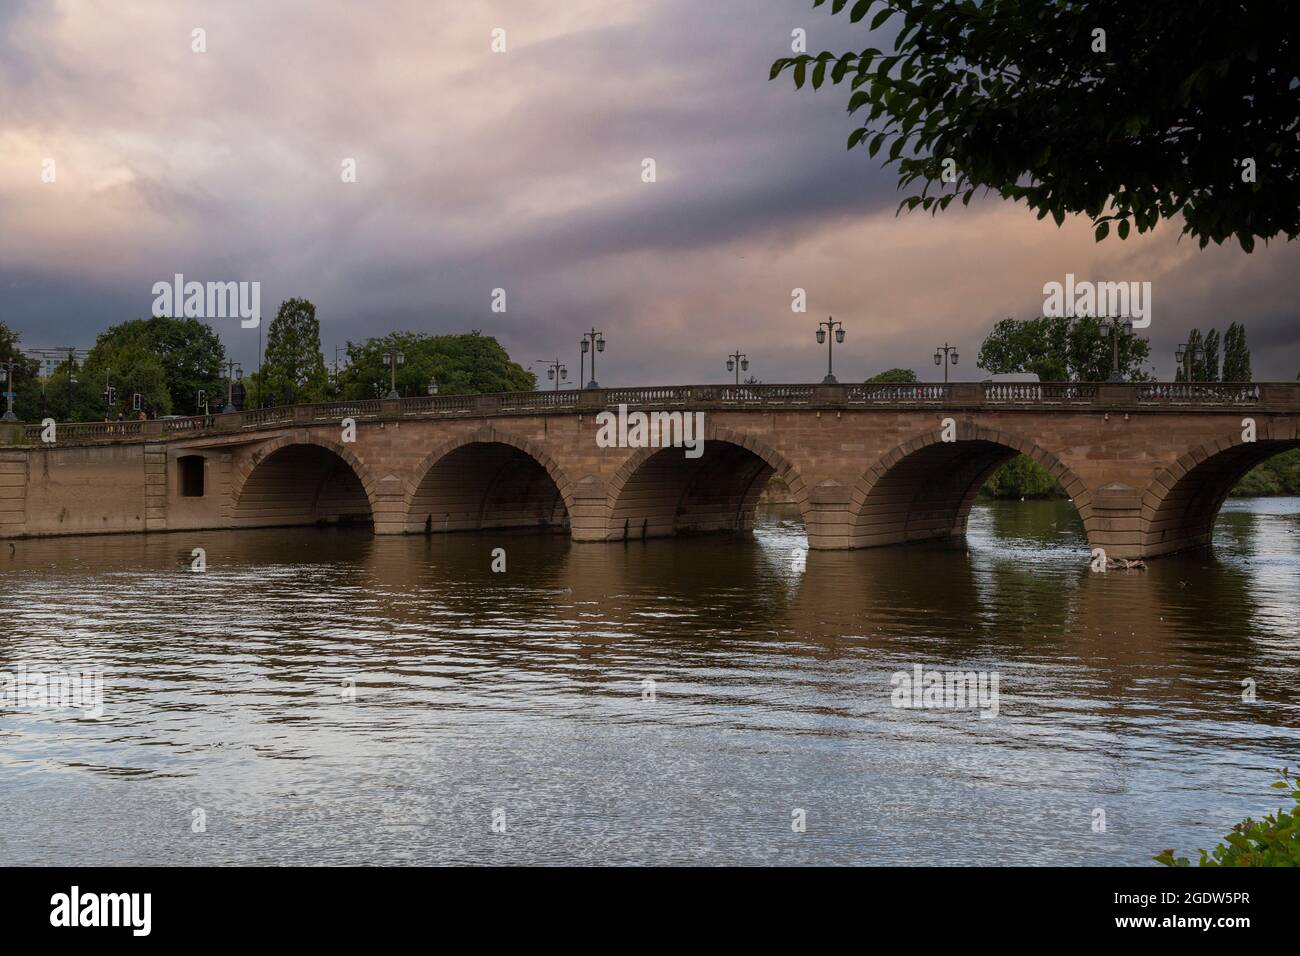 Editorial Worcester, Royaume-Uni - 11 août 2021 : le magnifique pont historique de Worcester enjambant la rivière Severn en Angleterre, Royaume-Uni Banque D'Images